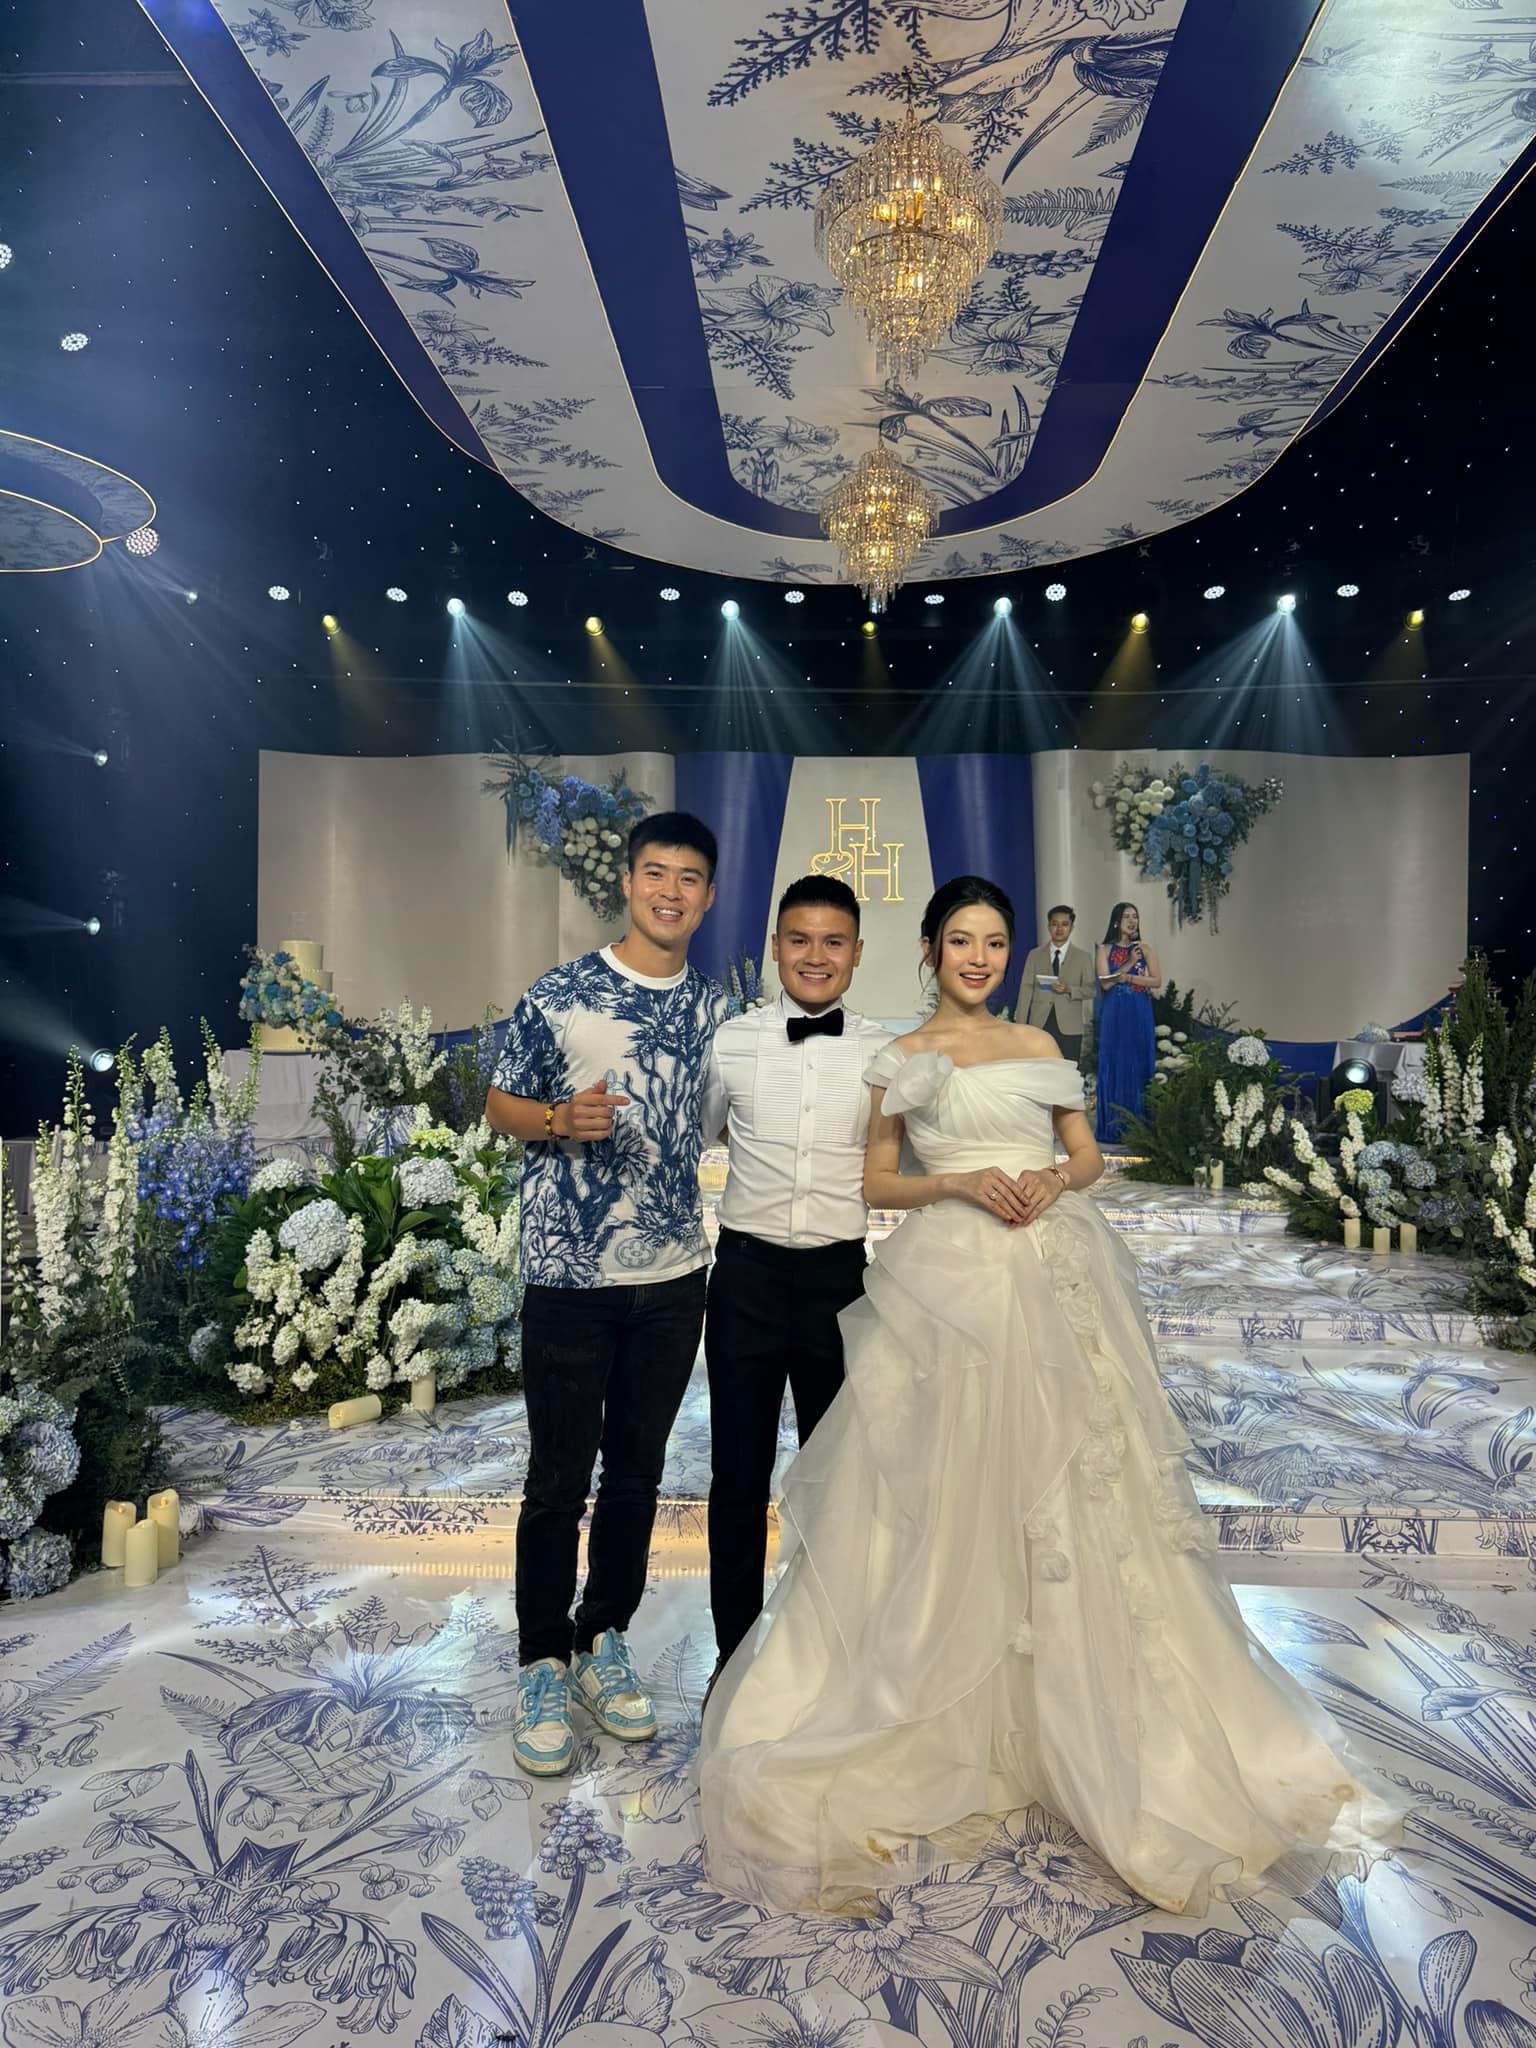 Duy Mạnh đăng ảnh tới chúc mừng đám cưới Quang Hải